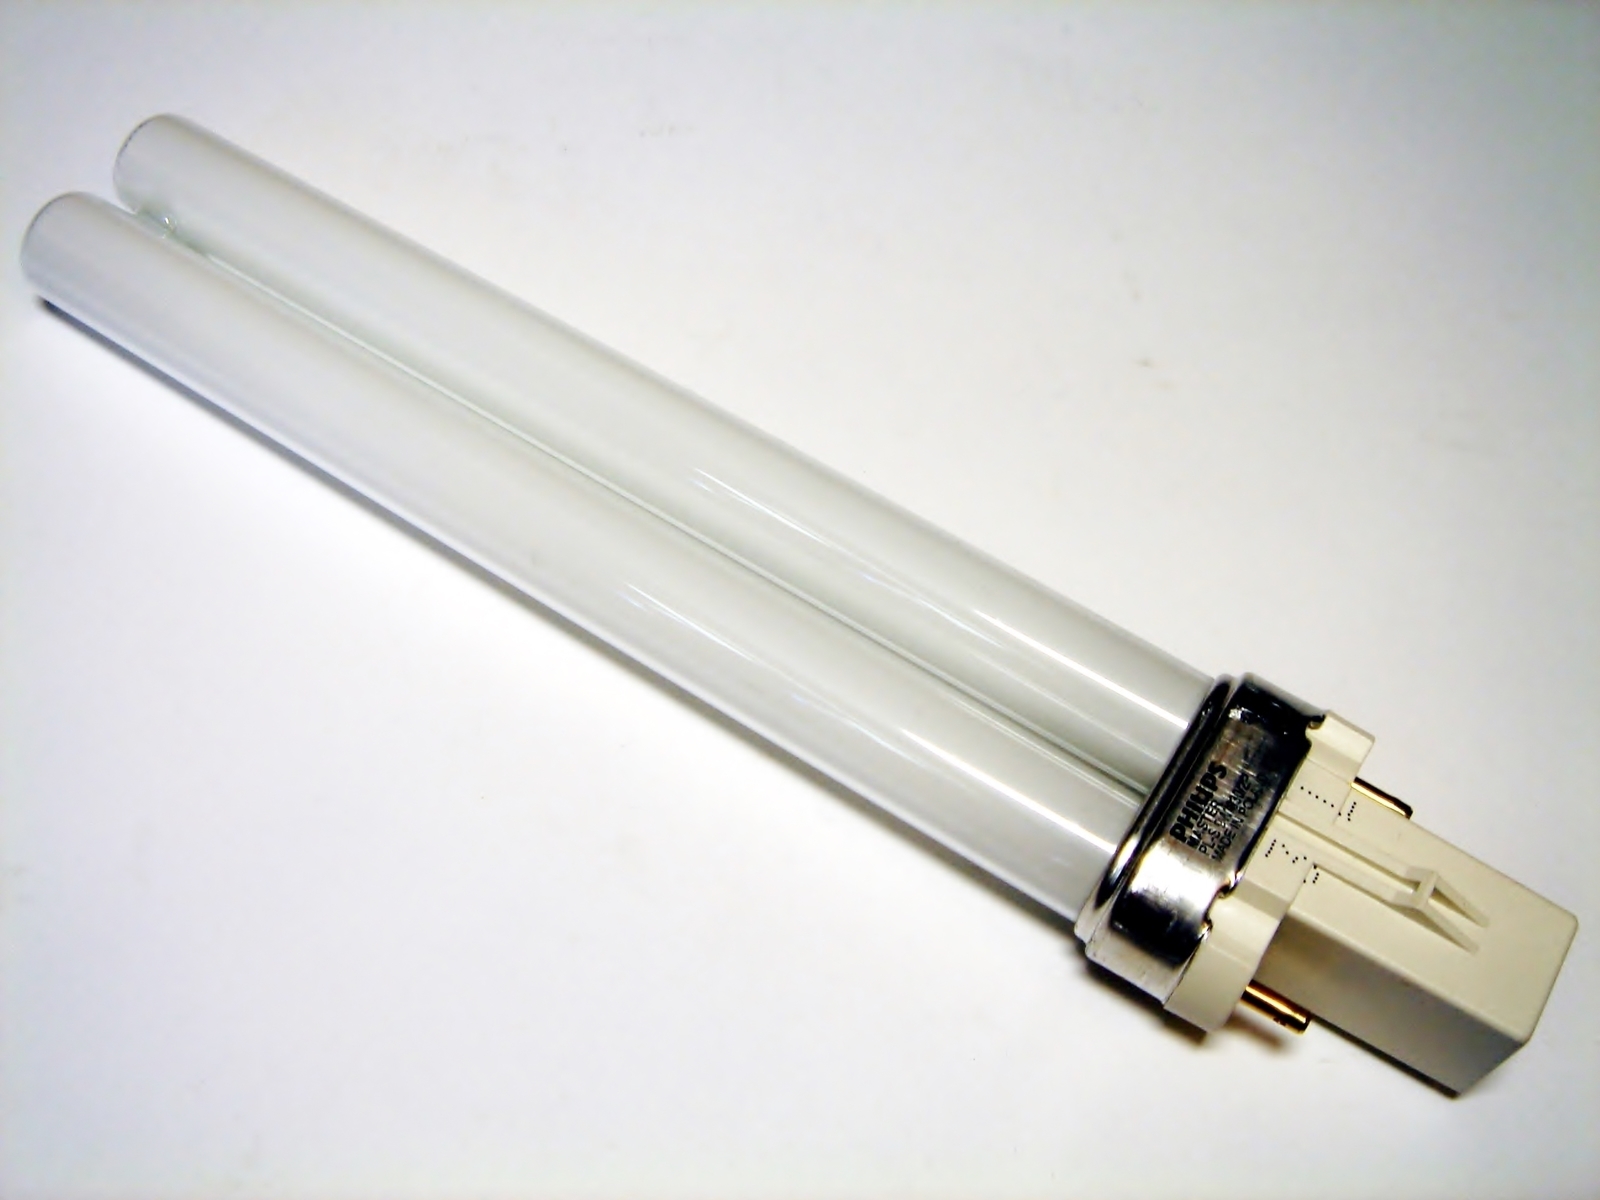 Лампа вб. Pl 9w g23. Компактная-люминесцентная лампа 9 Вт, Master pl-s, Philips, 9w/840/g23, 2-Pin, 260871. Лампа цоколь g23. Филипс лампа pl-s 9w.